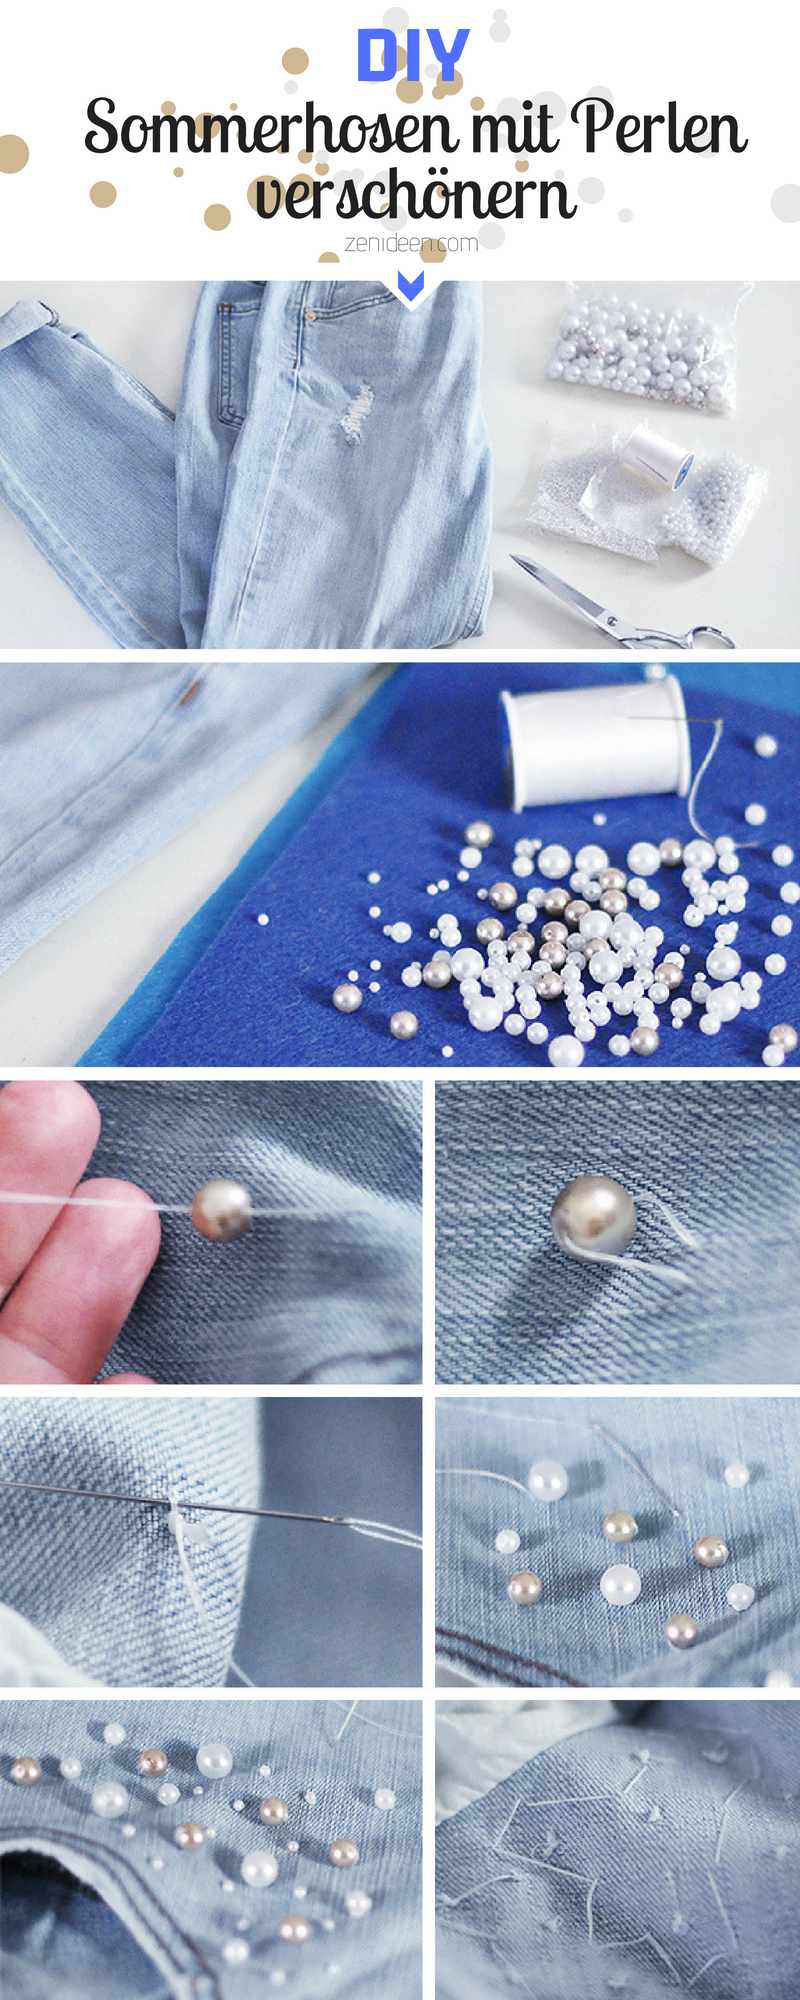 Leichte Sommerhose mit Perlen verschönern - Geben Sie Ihre alten Sommerhosen einen modernen Look